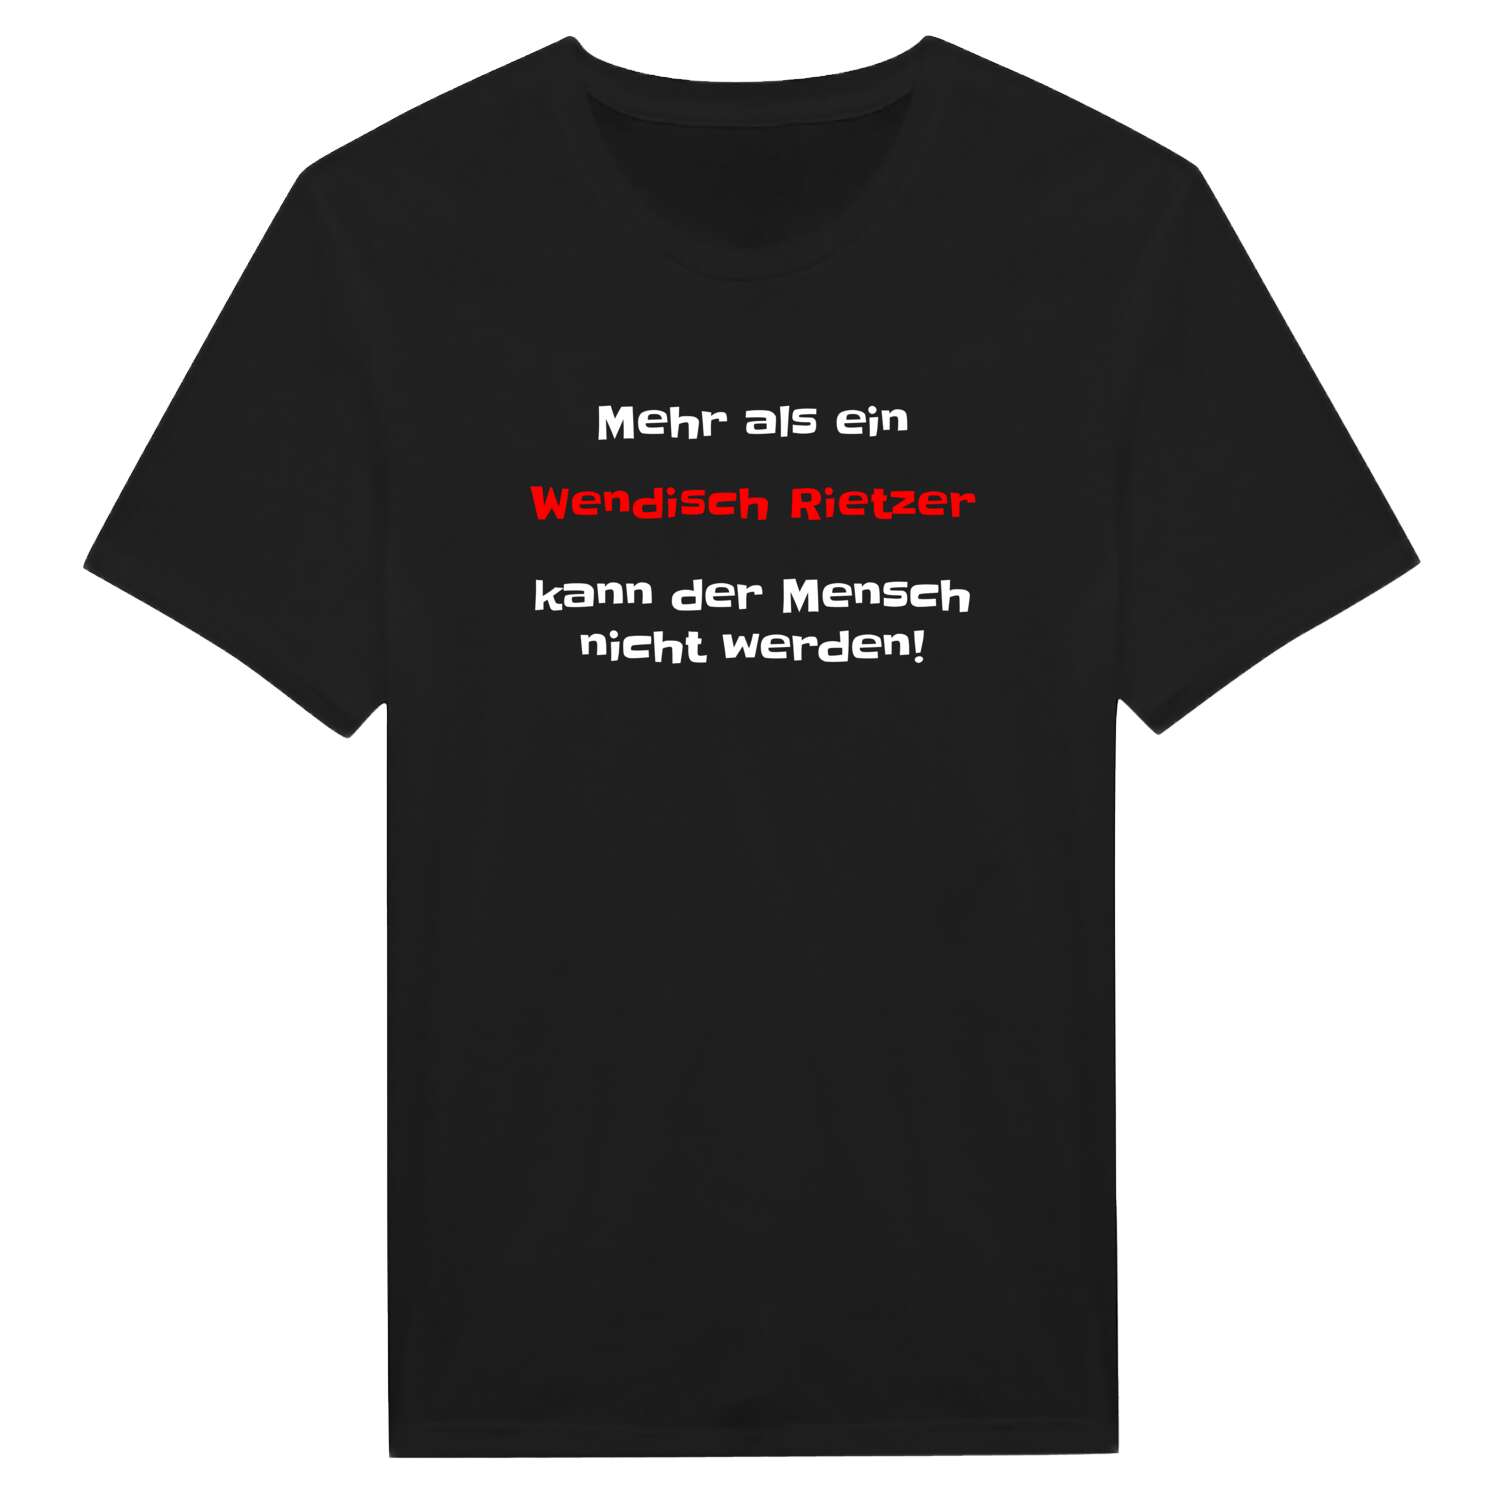 Wendisch Rietz T-Shirt »Mehr als ein«